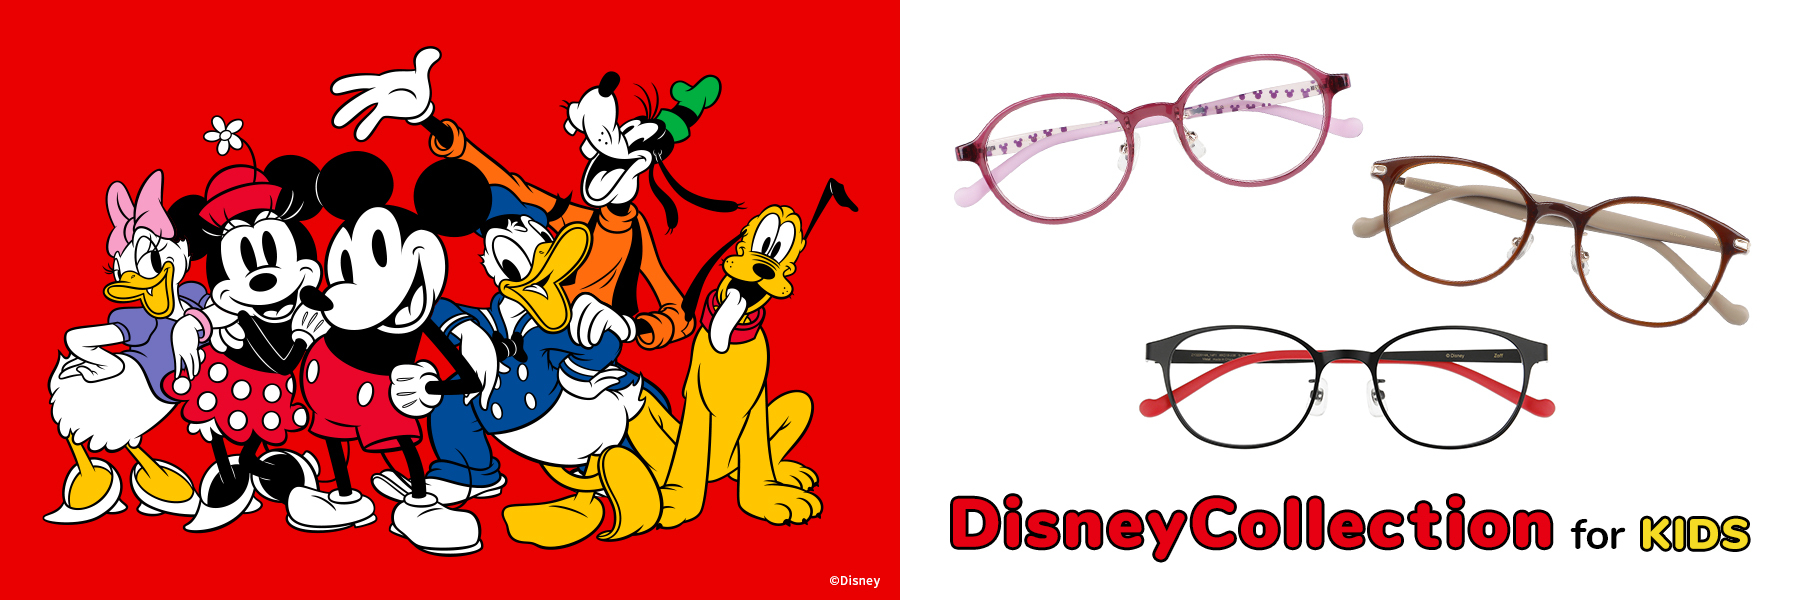 ミッキーマウスデザインのメガネなら、いつでもHAPPY！Disney Collectionより、お子様におすすめな小さめサイズが登場